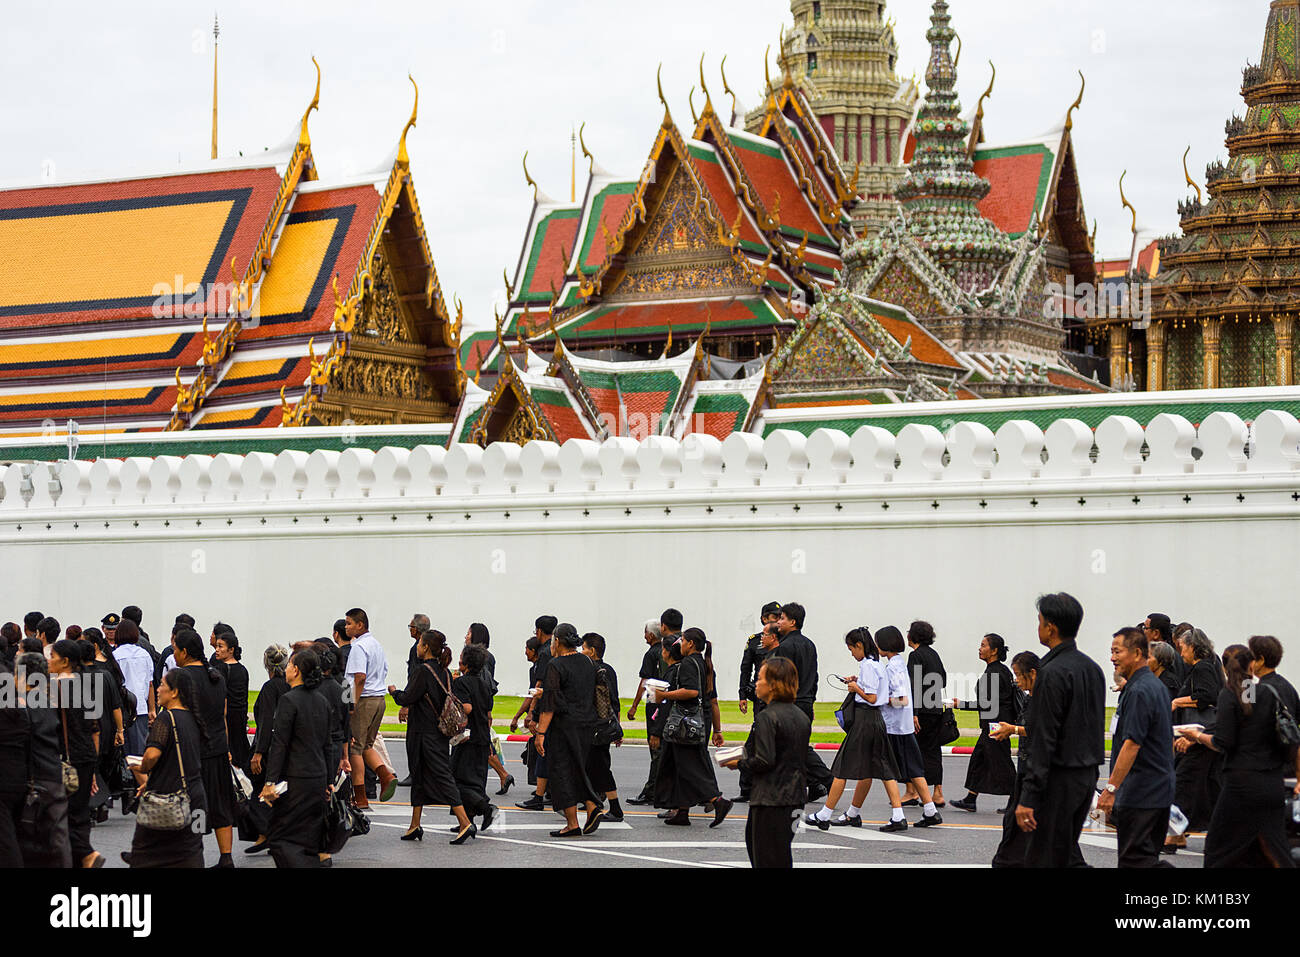 Thai en deuil de toute la Thaïlande viennent pour pleurer la mort du roi de Thaïlande à la grande palace, Bangkok, Thaïlande. Banque D'Images